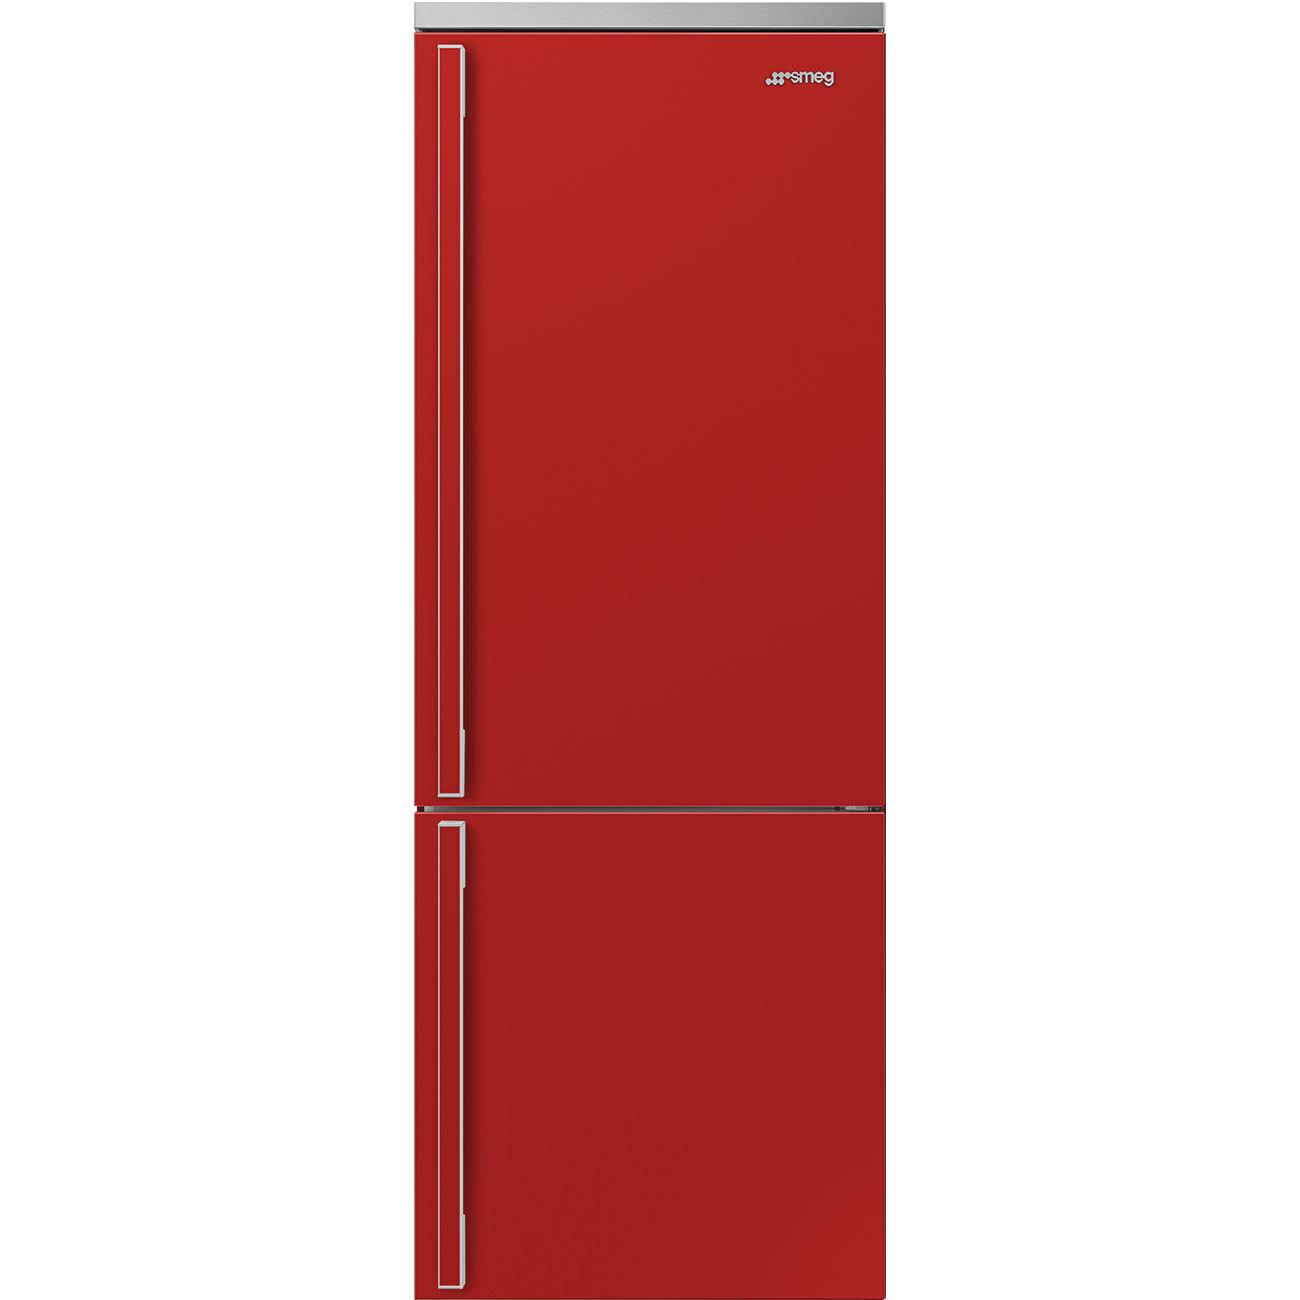 Smeg FA490URR Refrigerator Red Fa490Urr